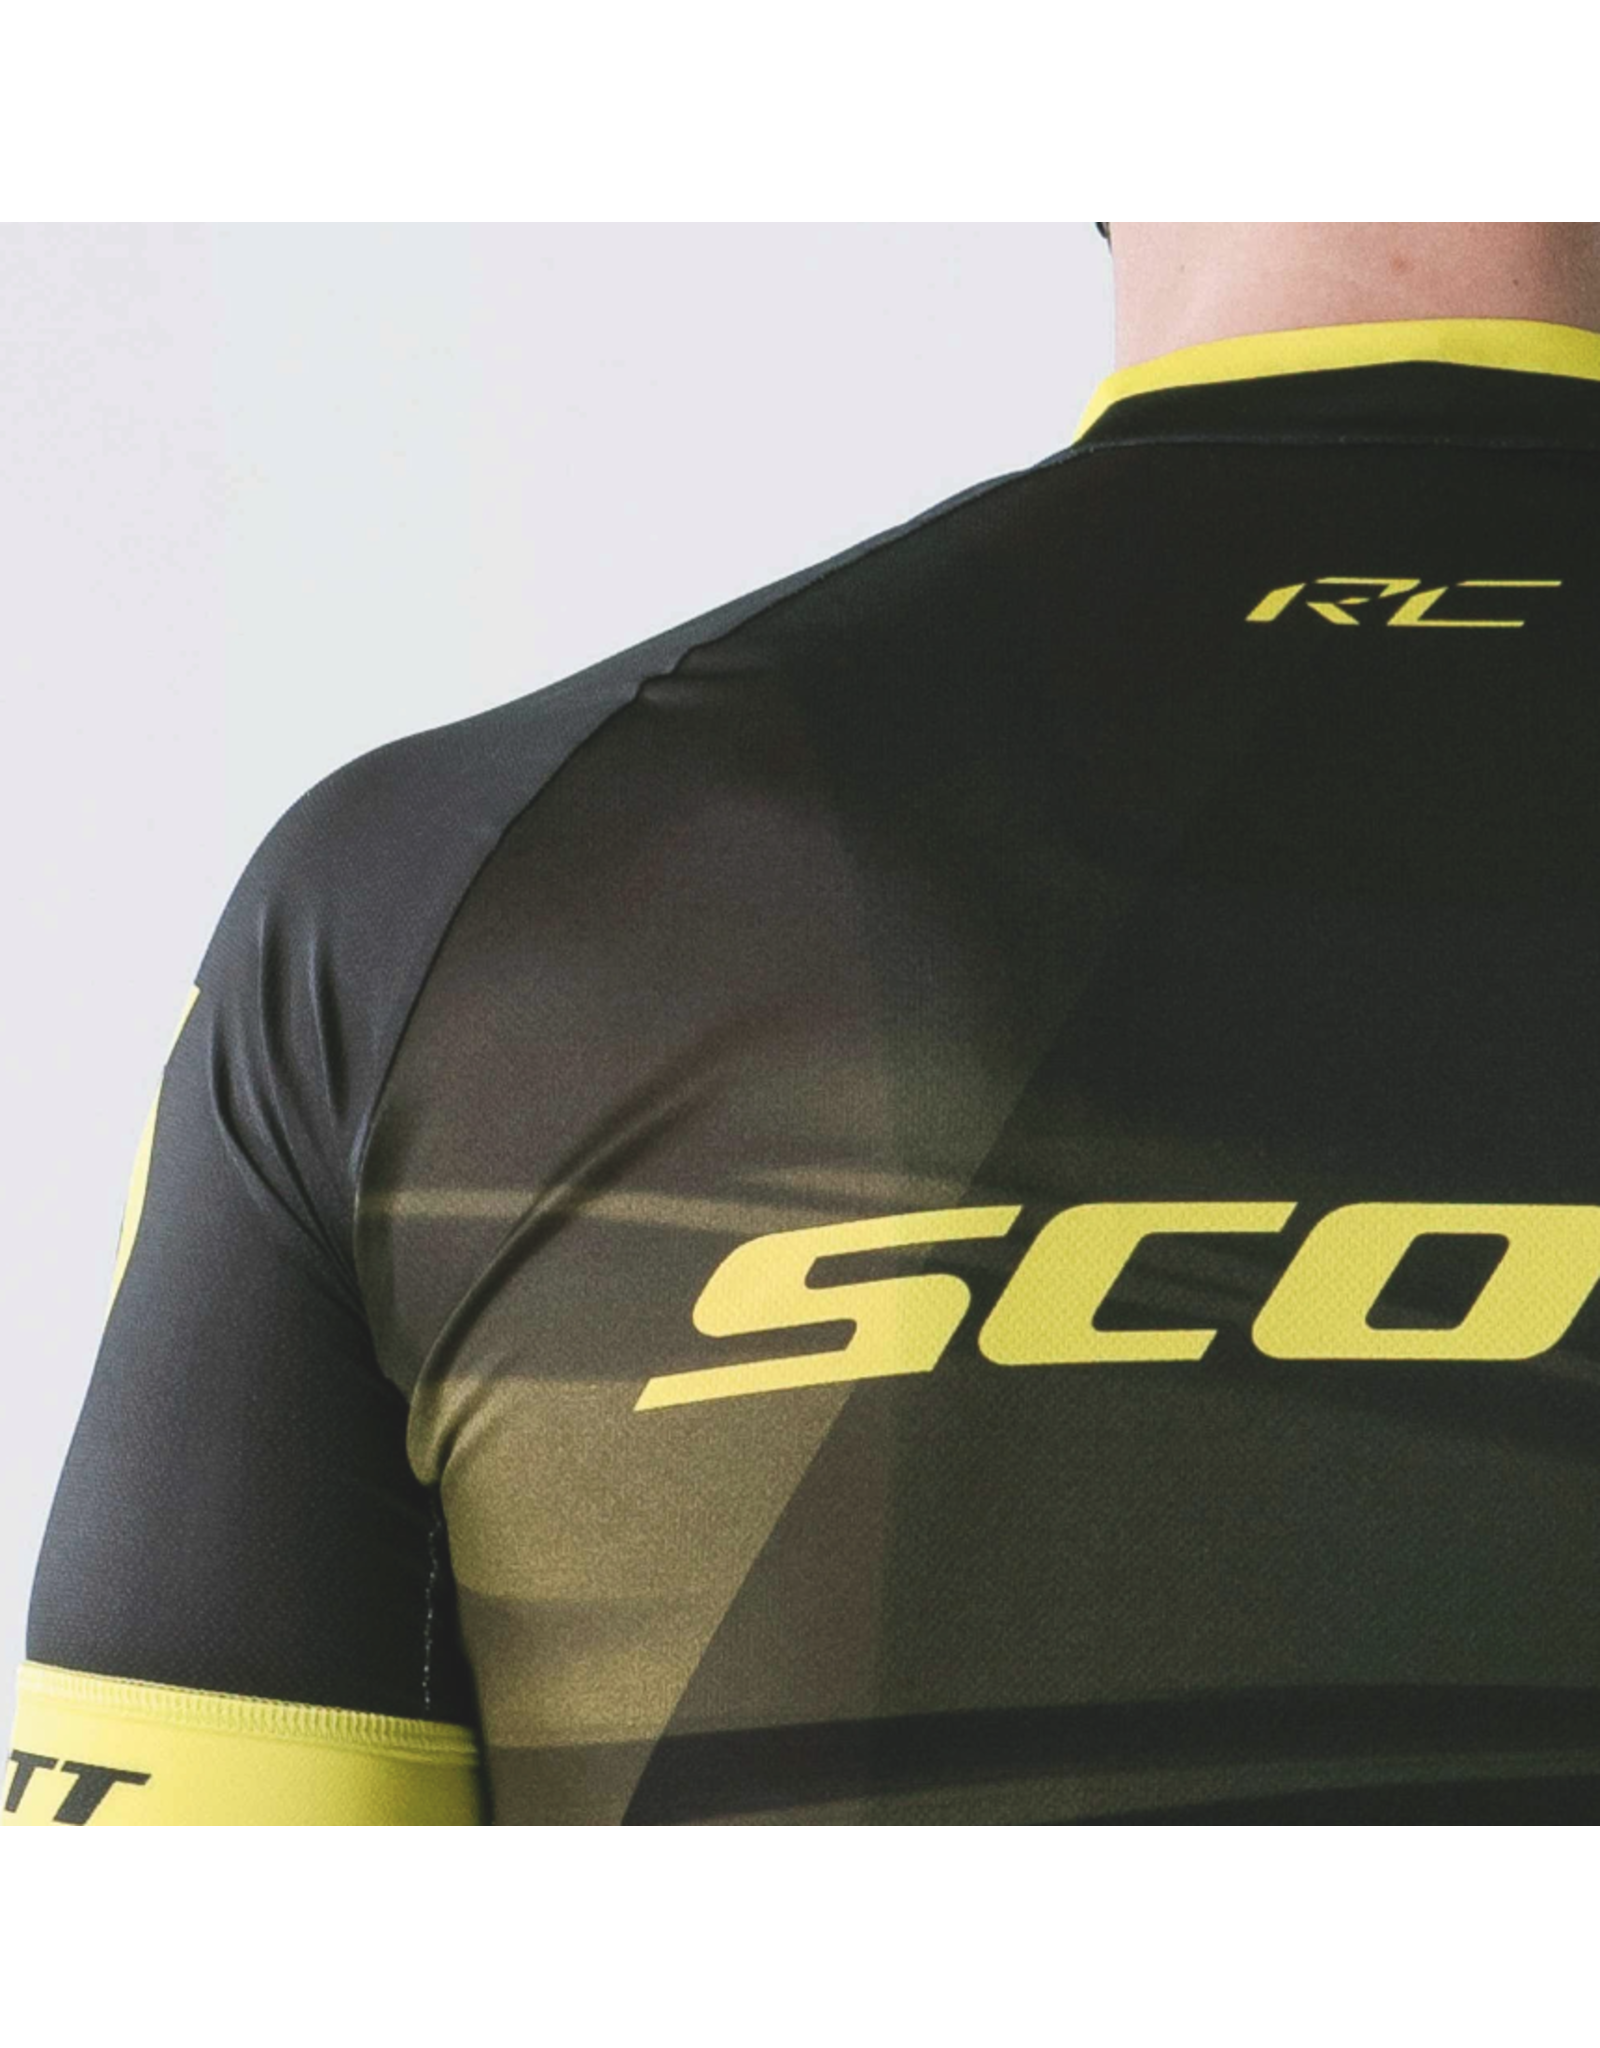 SCOTT SCOTT RC Pro s/sl M's Shirt